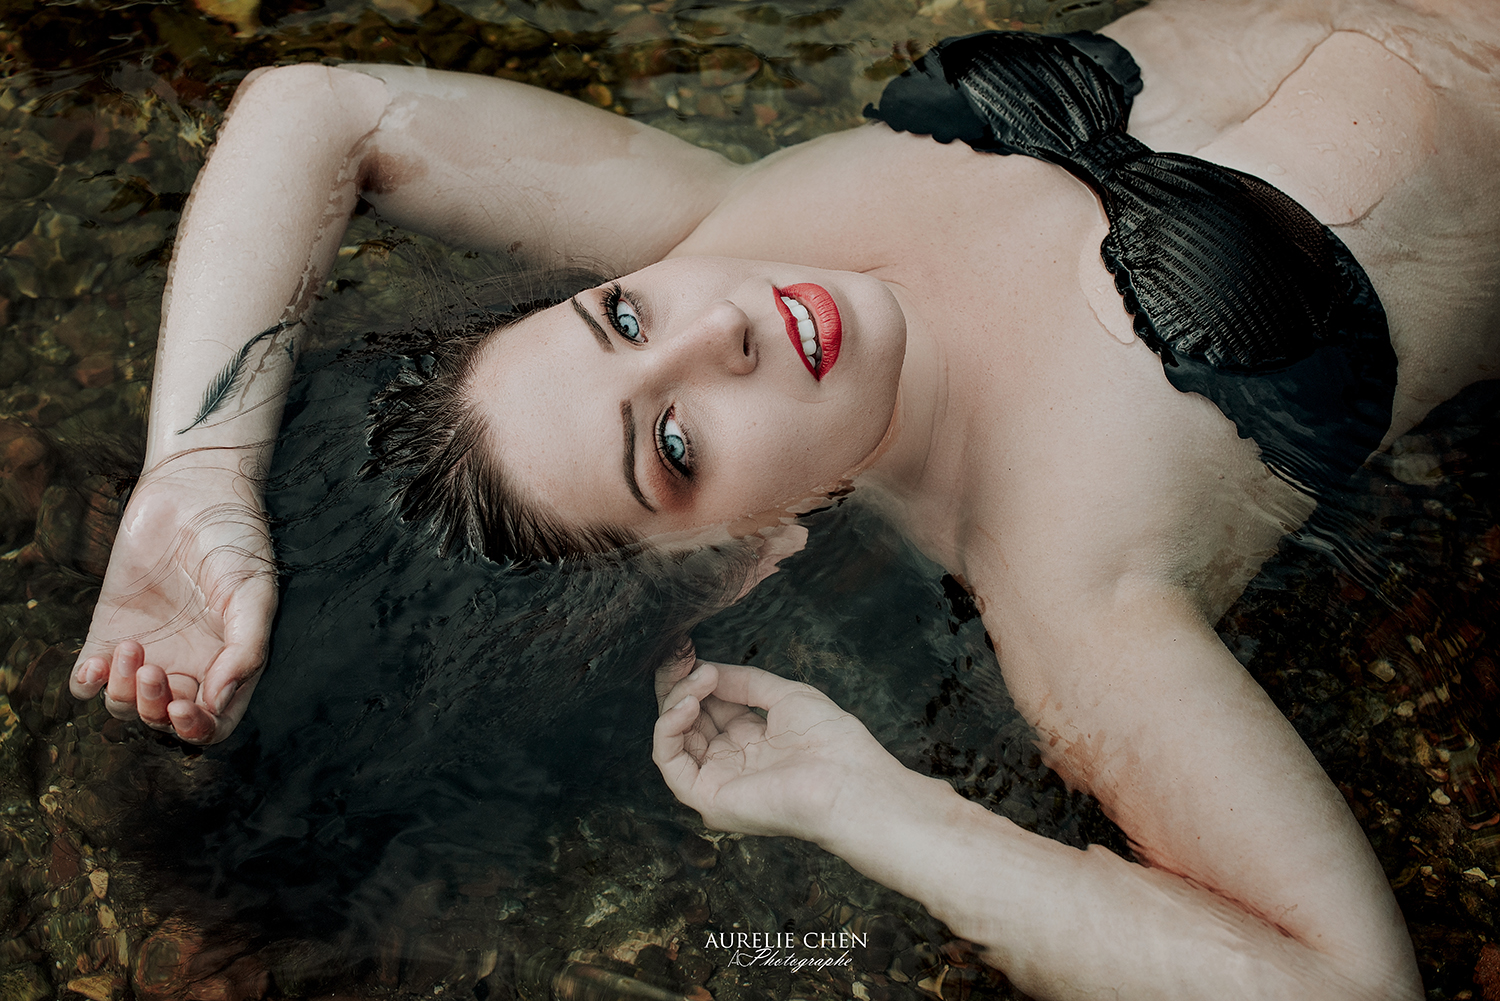 Portrait | Aurelie Chen photographe | Photos dans l’eau